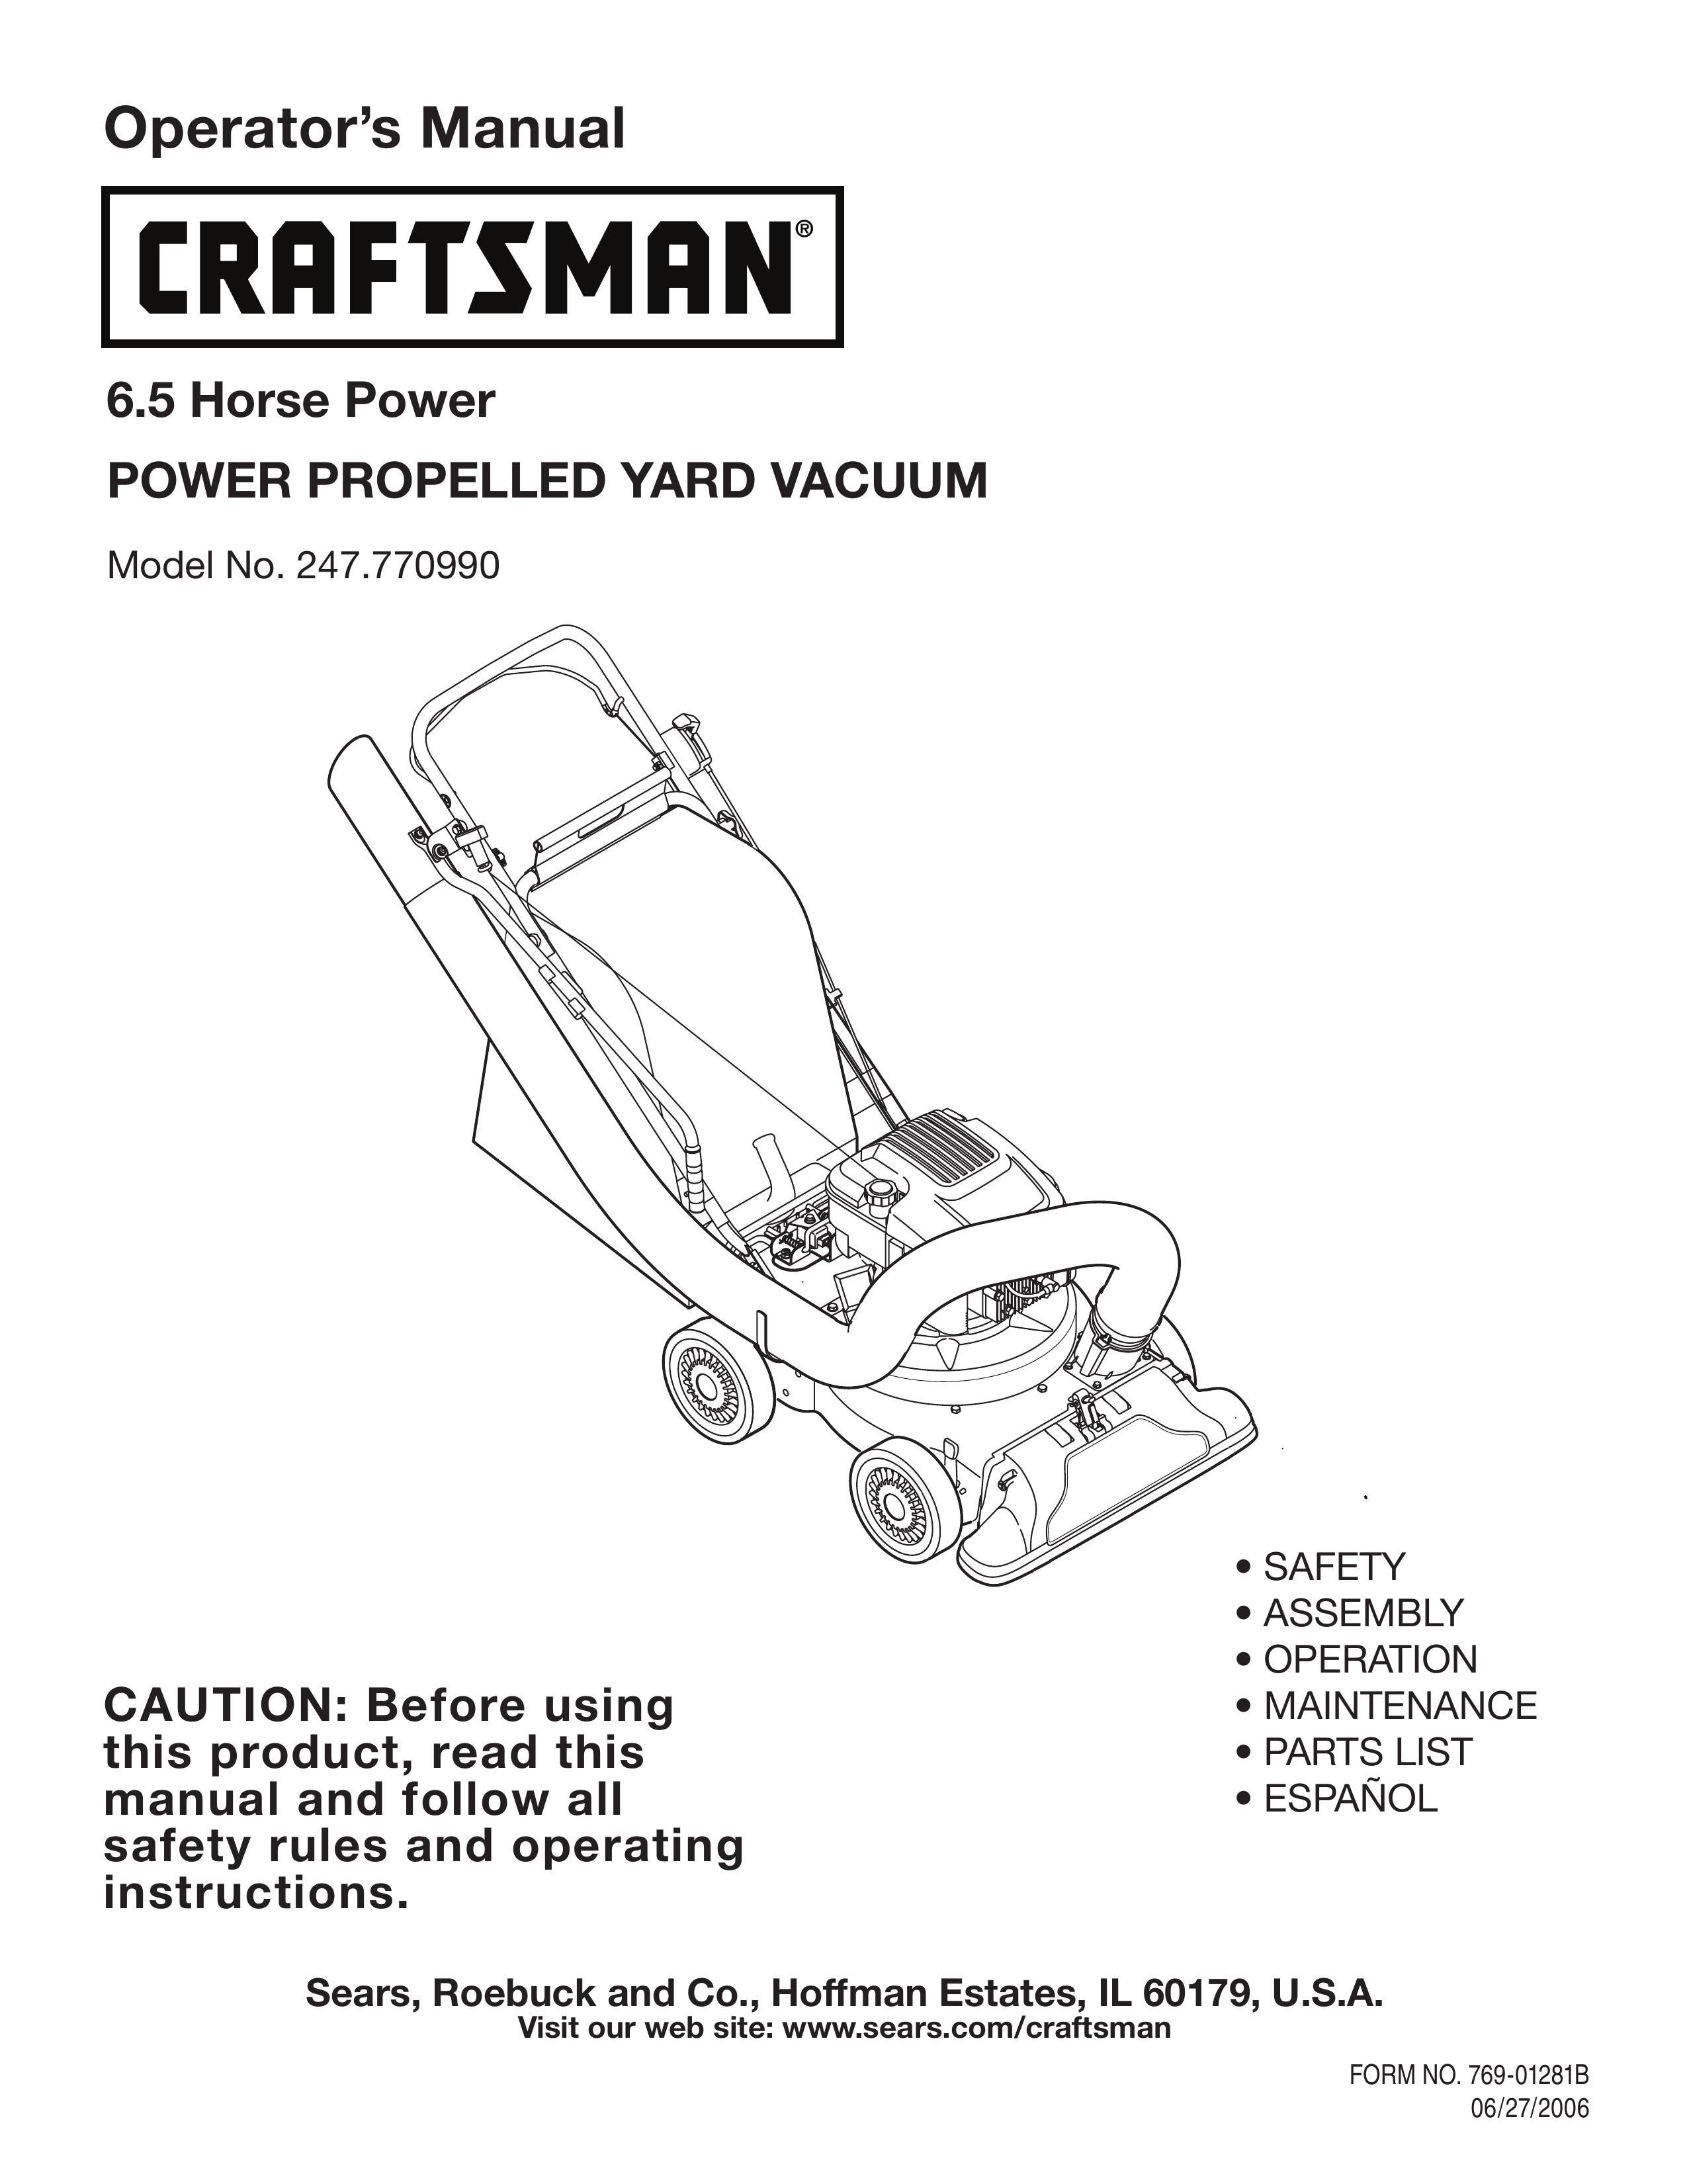 Craftsman 247.77099 Yard Vacuum User Manual